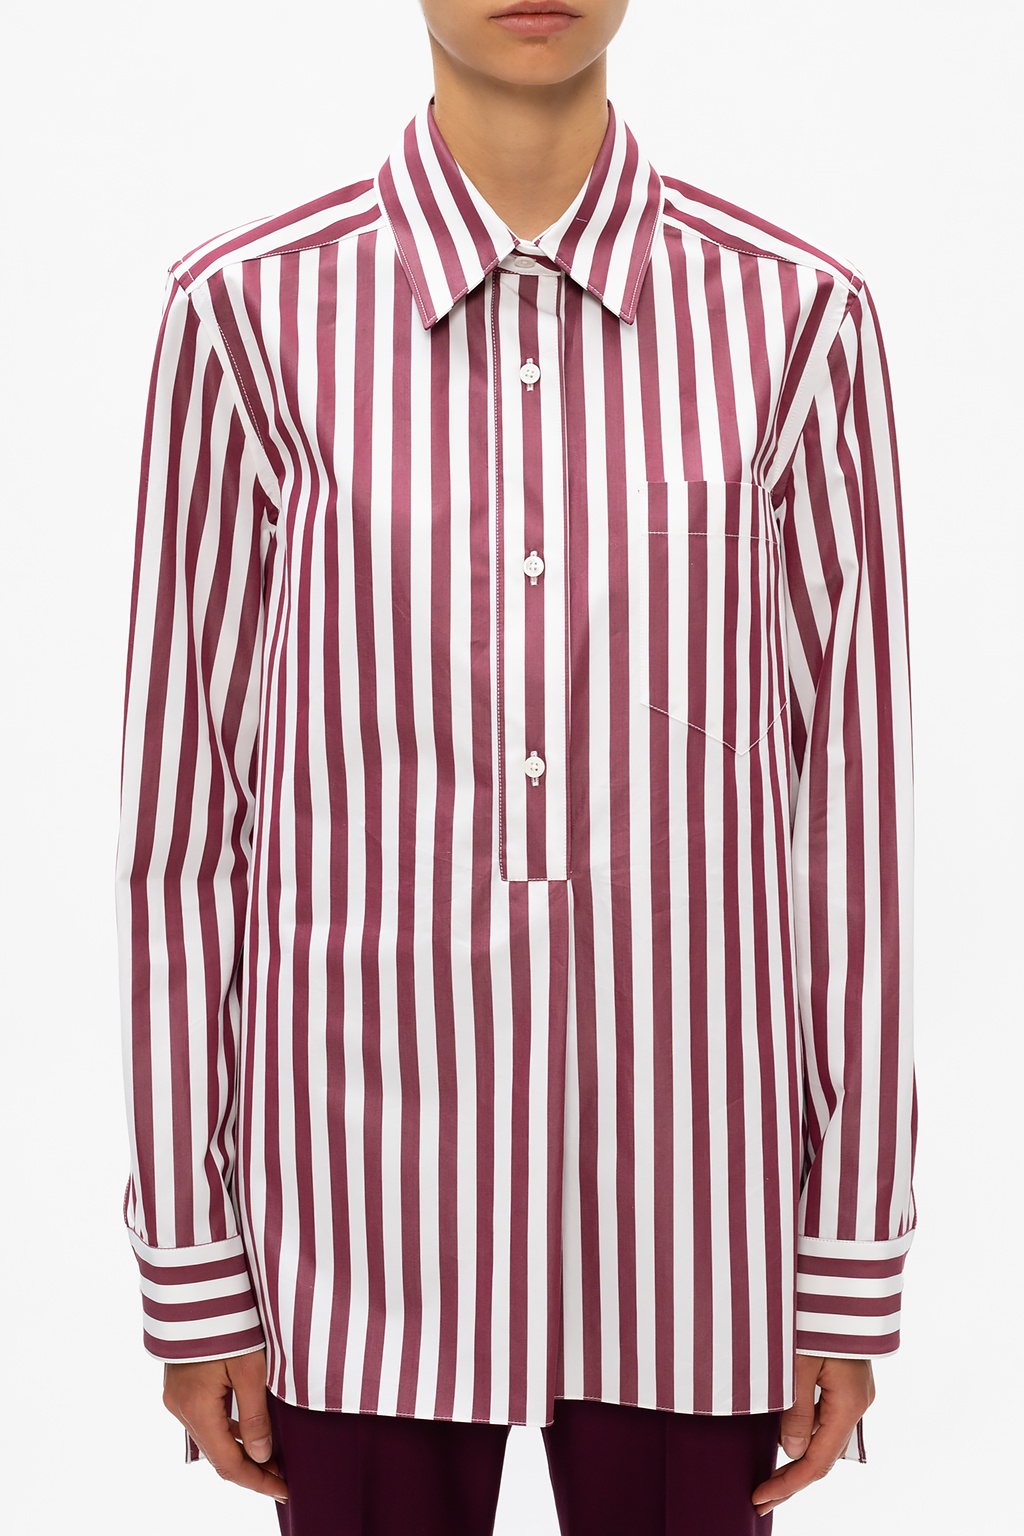 Marni Striped shirt | Women's Clothing | IetpShops